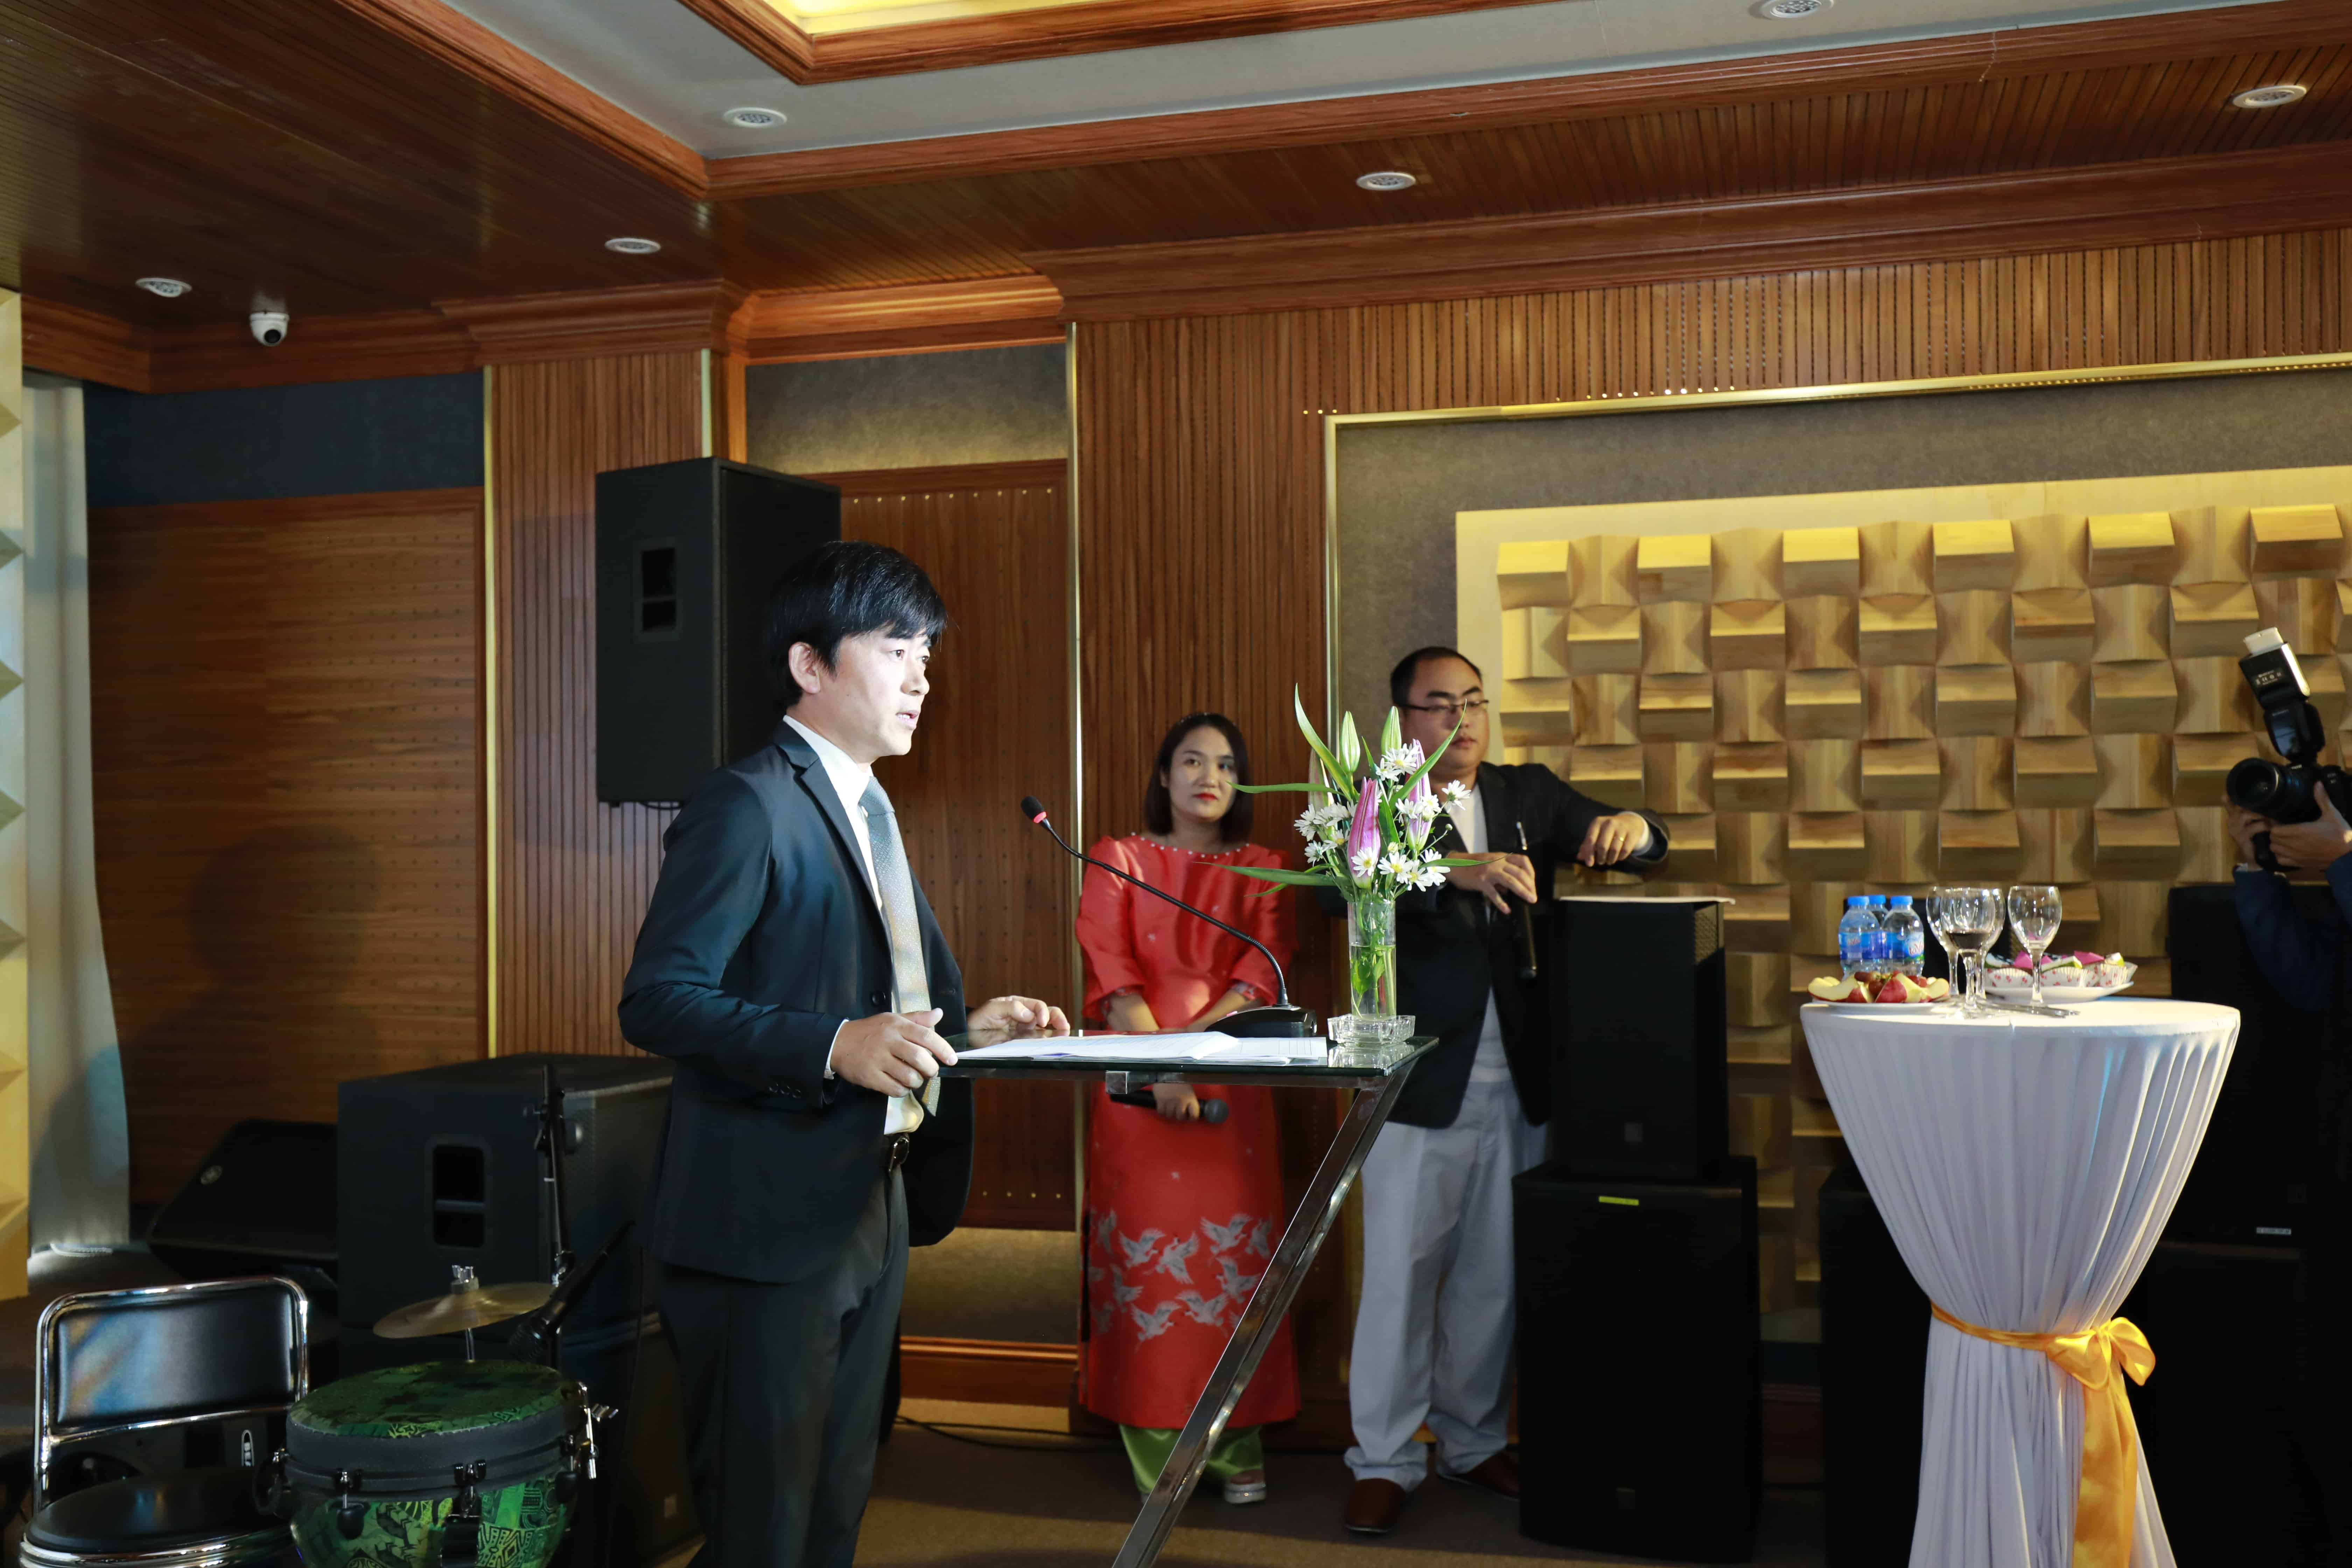 Ông Toru Sakaguchi phát biểu mở màn trong buổi tiệc khai trương cơ sở mới của TCA - Trung Chính Audio